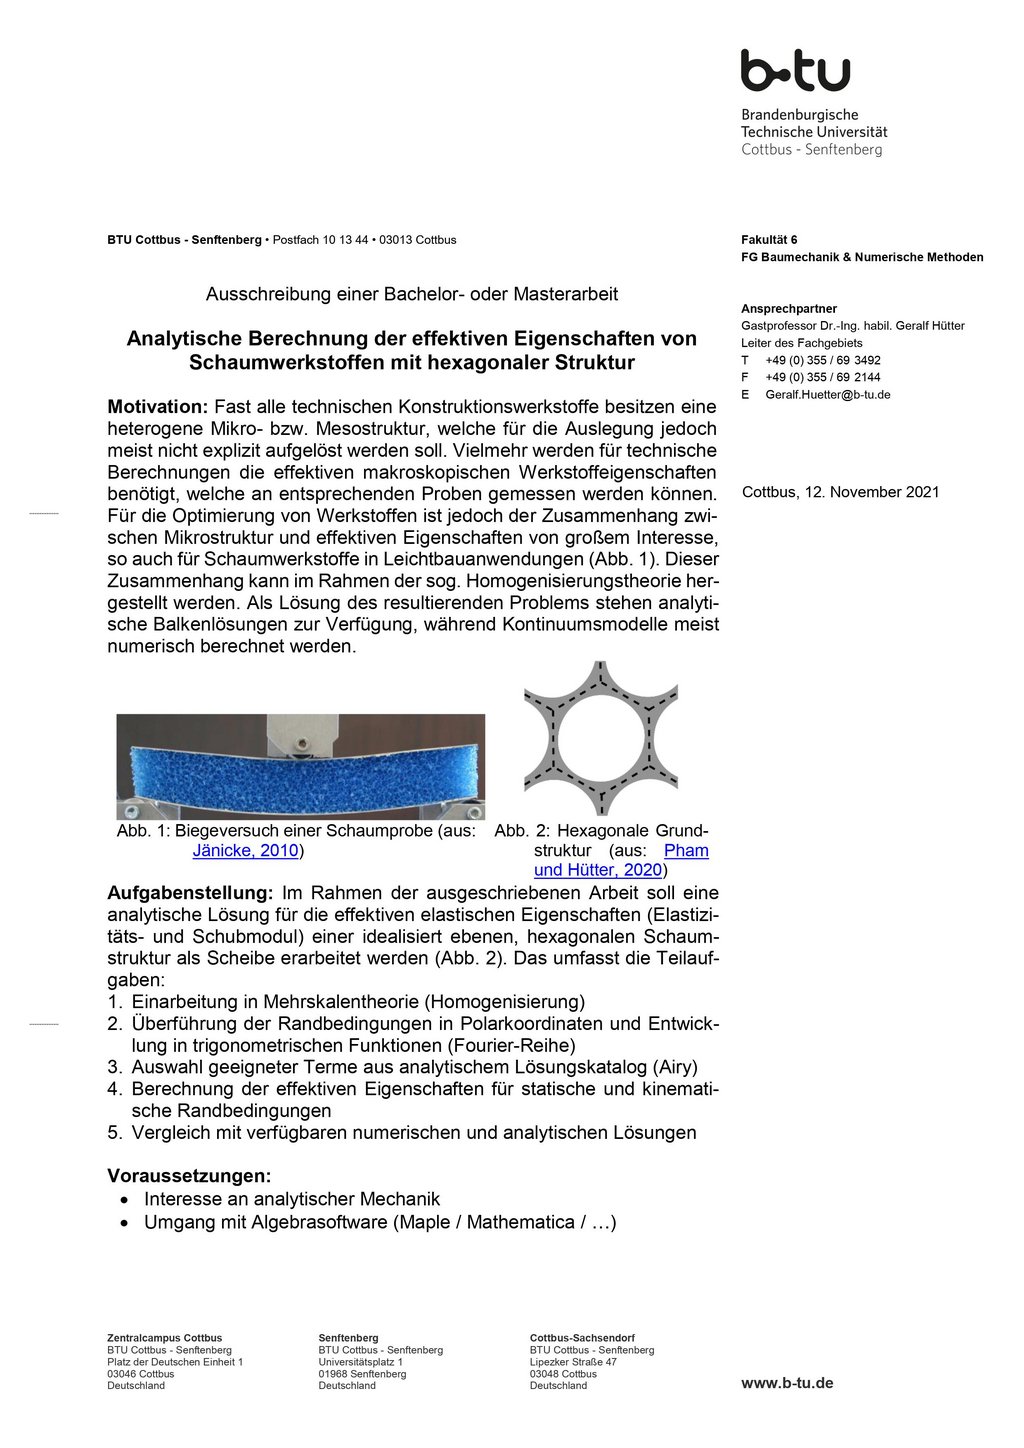 Ausschreibung: Analytische Berechnung der effektiven Eigenschaften von Schaumwerkstoffen mit hexagonaler Struktur